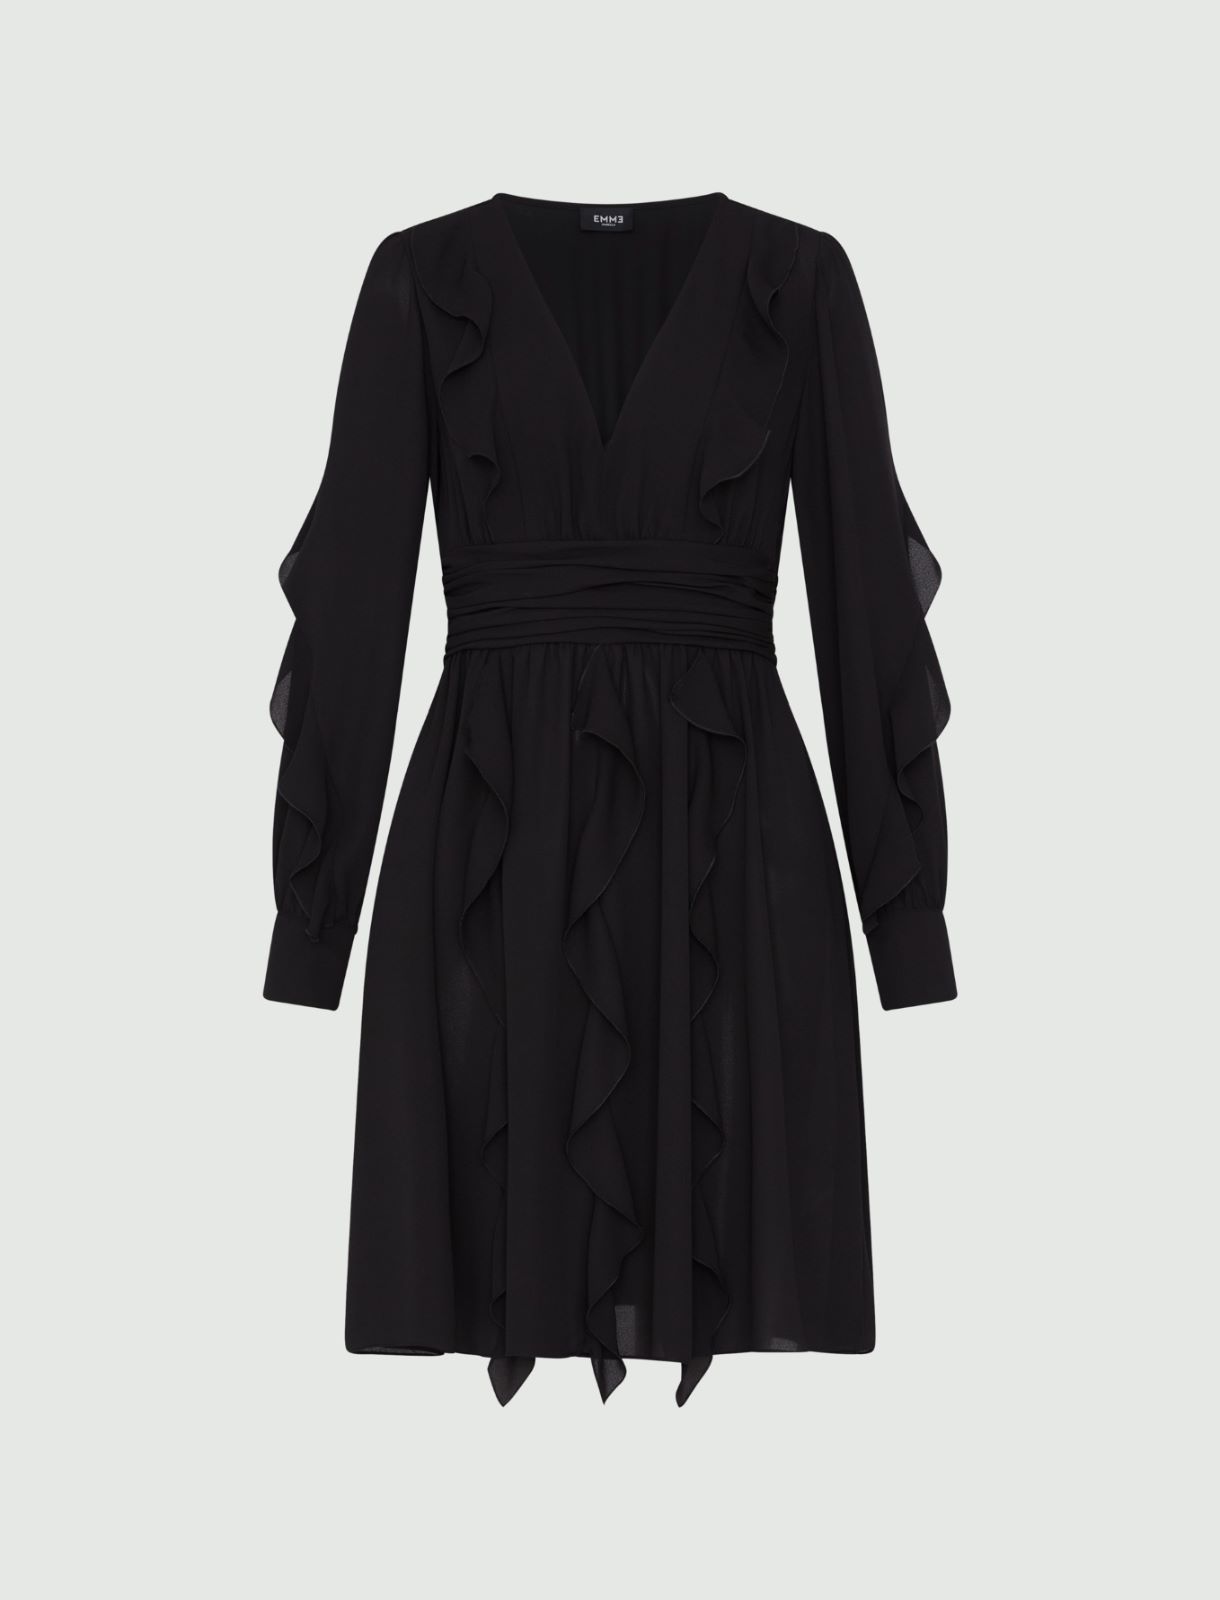 Flared dress, black | Marella